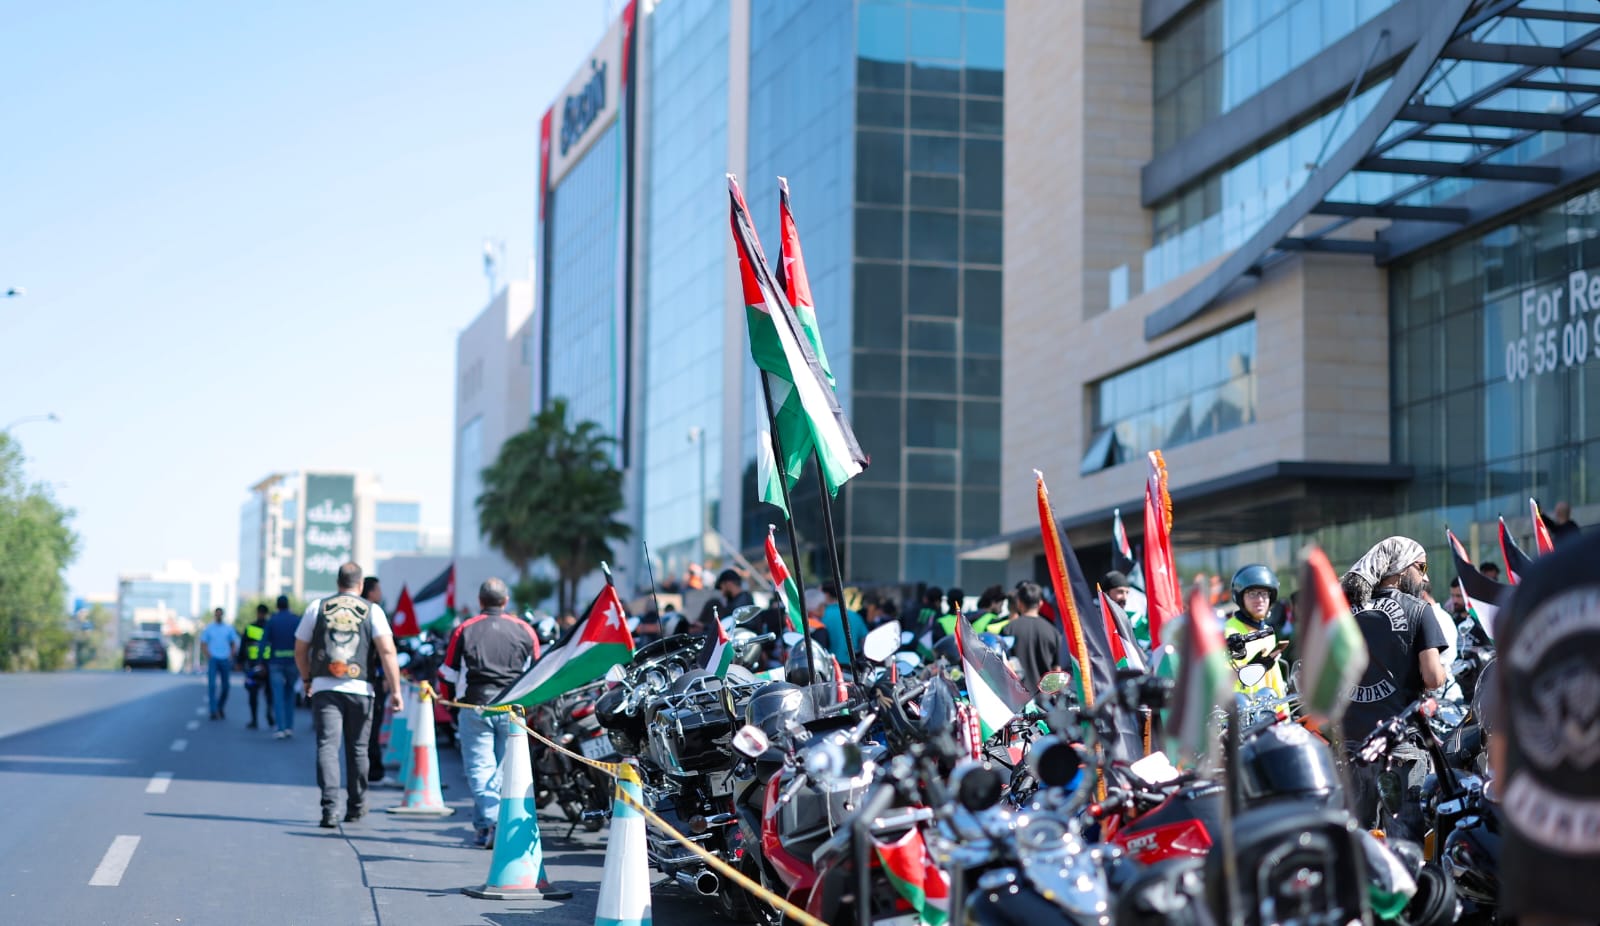 انطلاق مسيرة دراجات مزينة بالأعلام الأردنية من مبنى شركة زين بمناسبة عيد الاستقلال